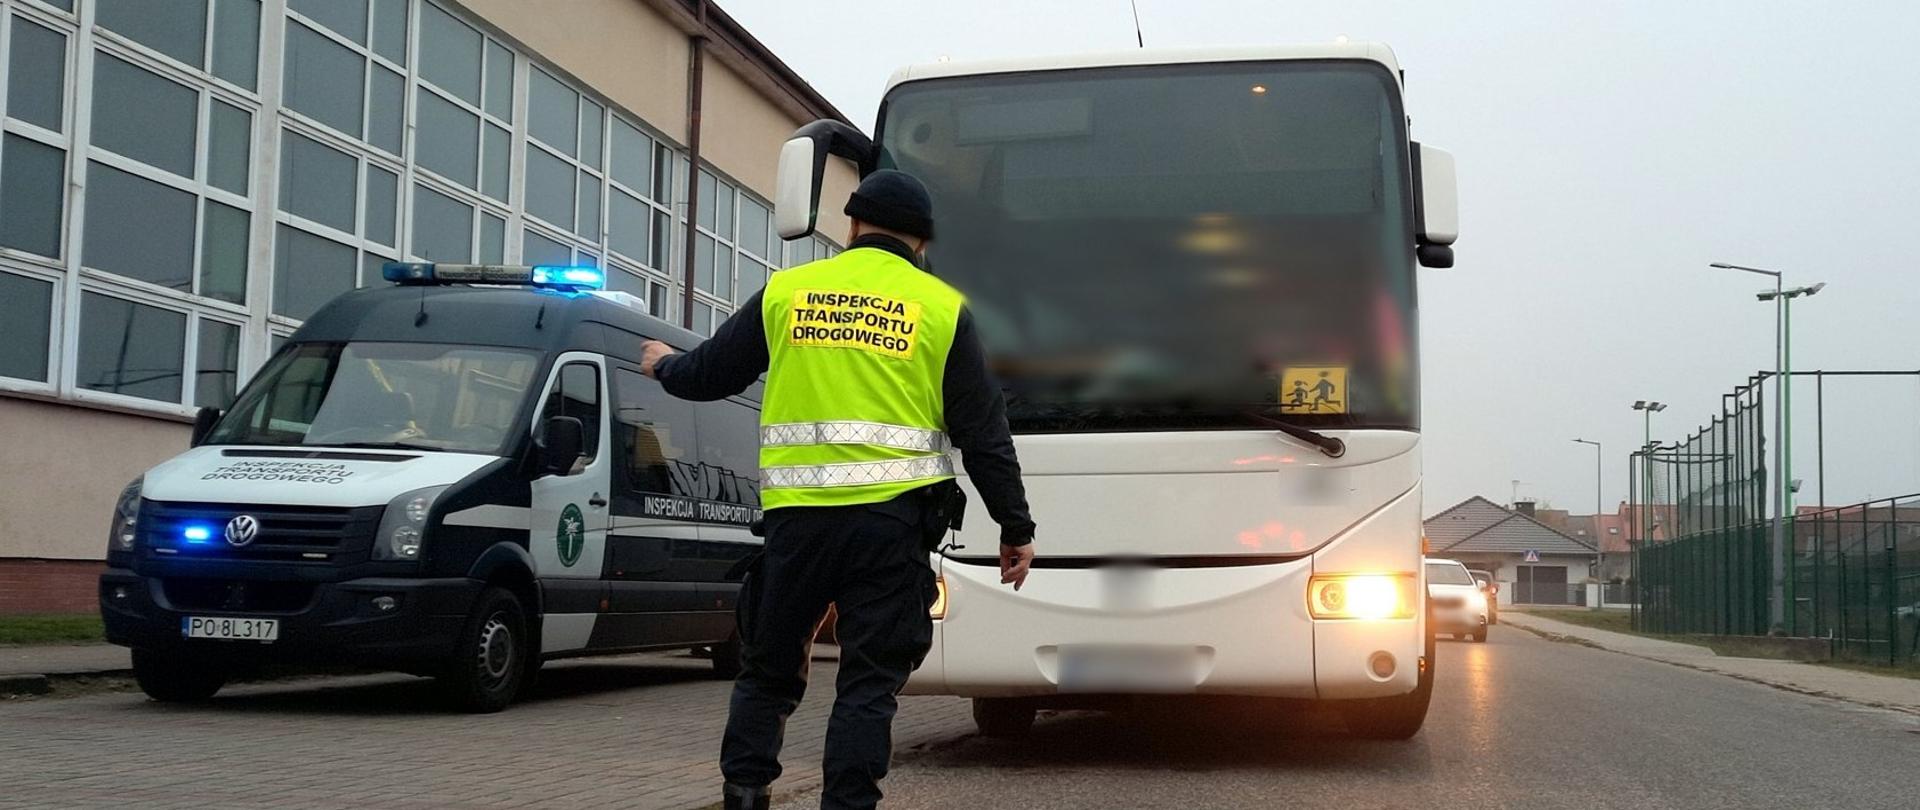 Na pierwszym planie: umundurowany inspektor wielkopolskiej Inspekcji Transportu Drogowego. W tle (od lewej): oznakowany furgon wielkopolskiej Inspekcji Transportu Drogowego i stojący obok kontrolowany autobus.